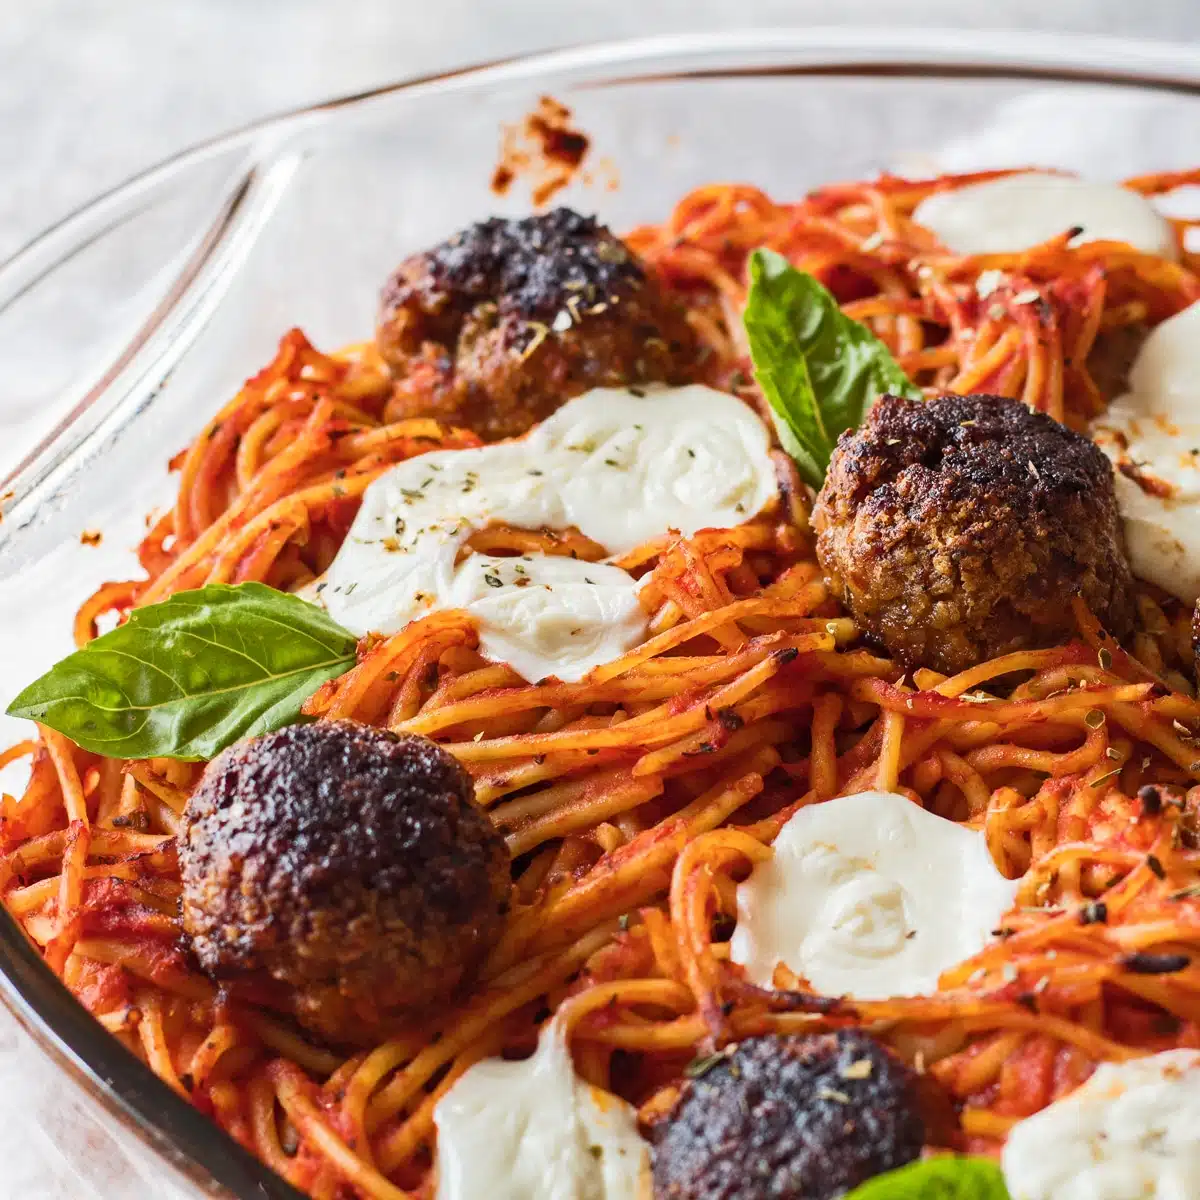 Cosa servire con l'immagine della cena a base di spaghetti che mostra gli spaghetti al forno.